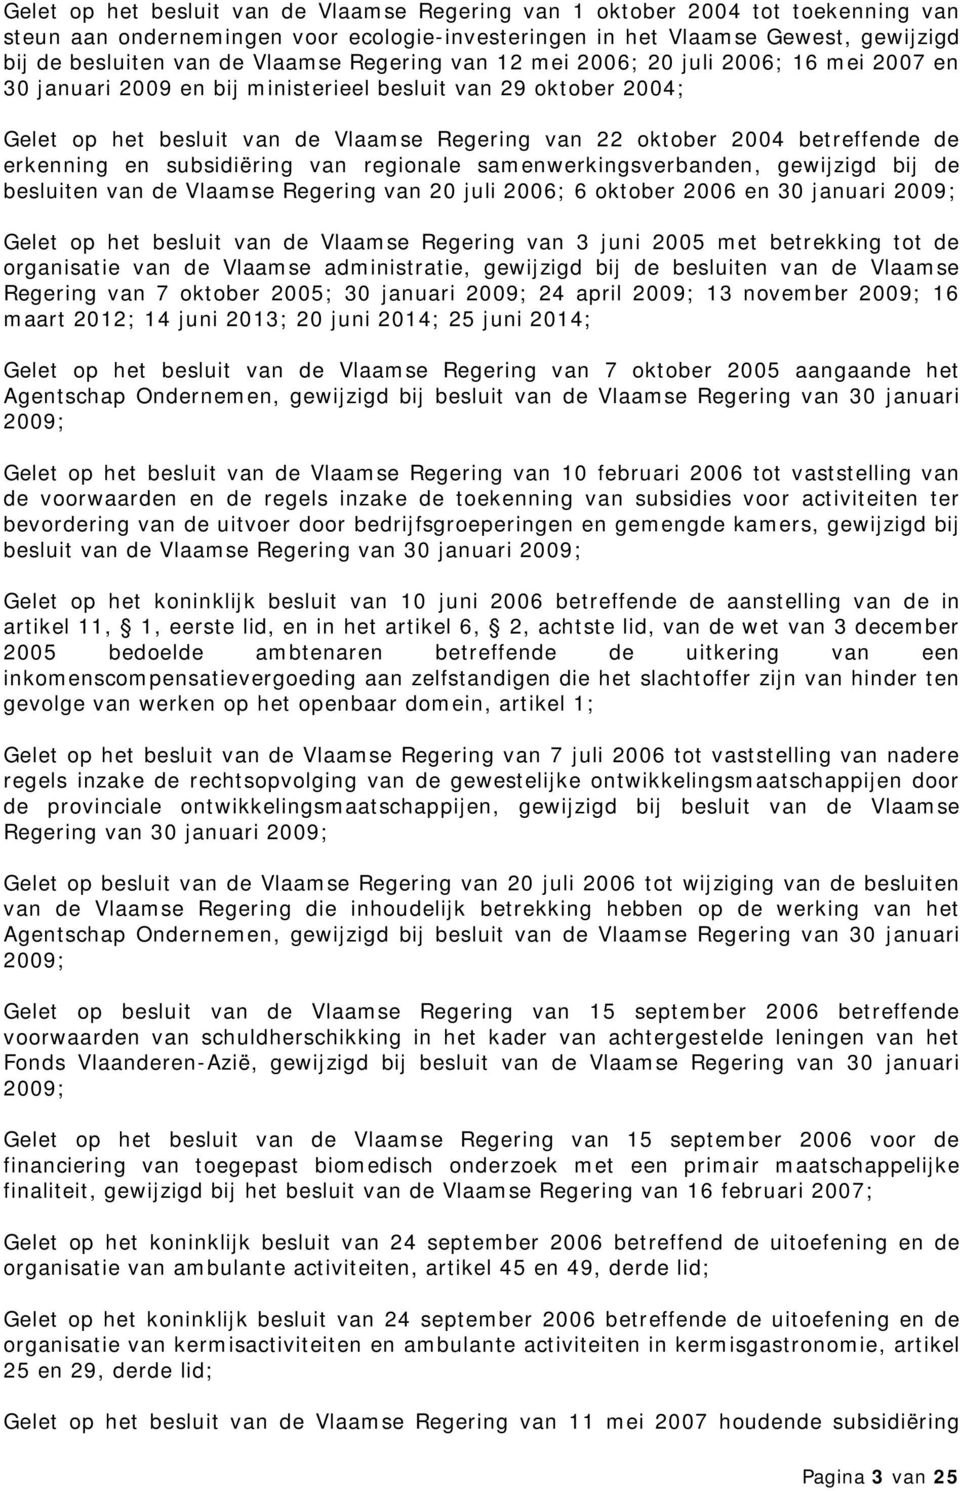 erkenning en subsidiëring van regionale samenwerkingsverbanden, gewijzigd bij de besluiten van de Vlaamse Regering van 20 juli 2006; 6 oktober 2006 en 30 januari 2009; Gelet op het besluit van de